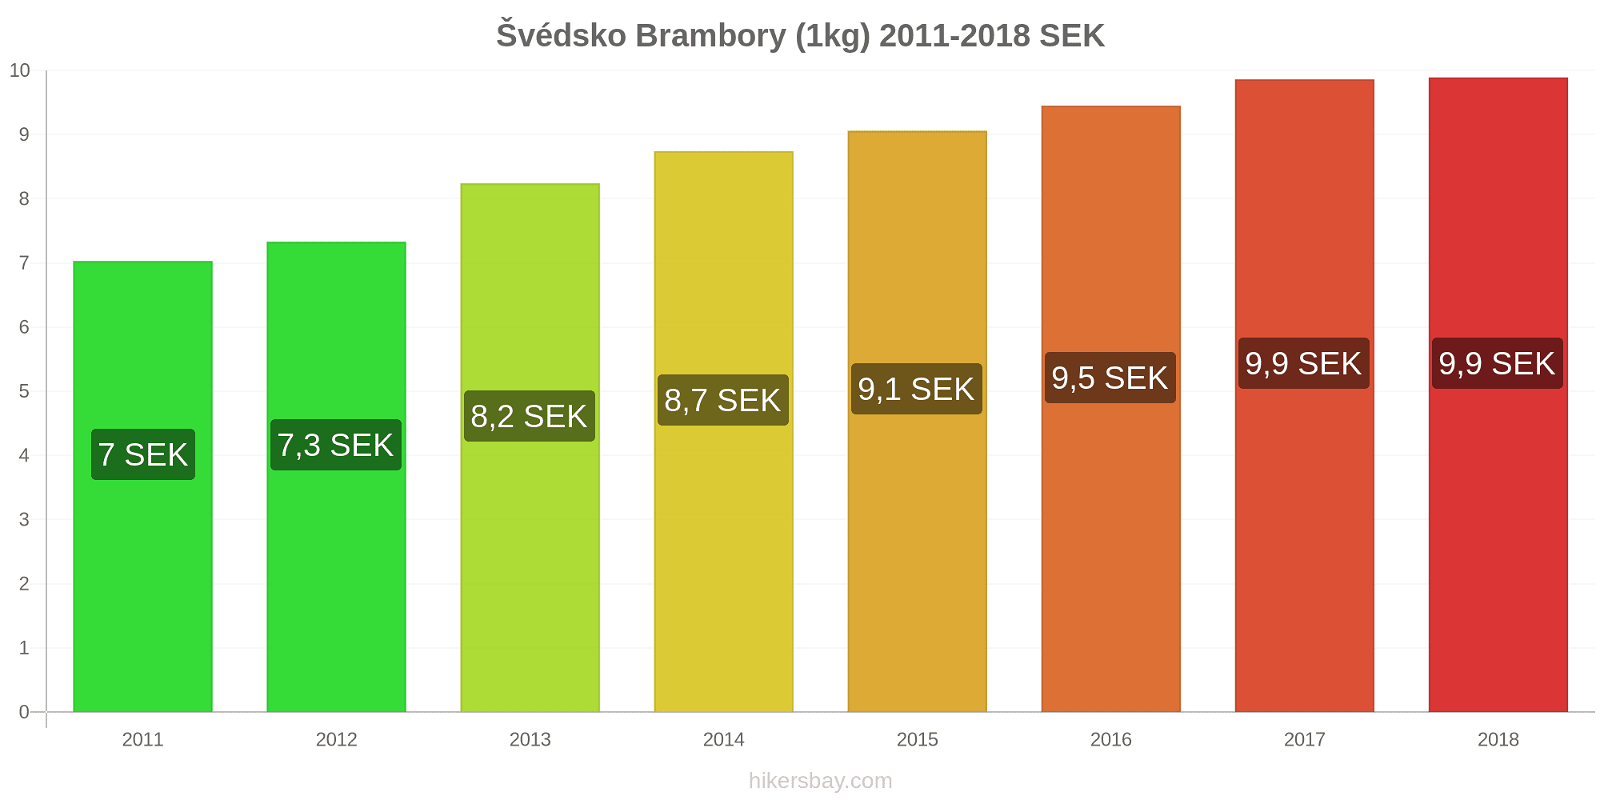 Švédsko změny cen Brambory (1kg) hikersbay.com